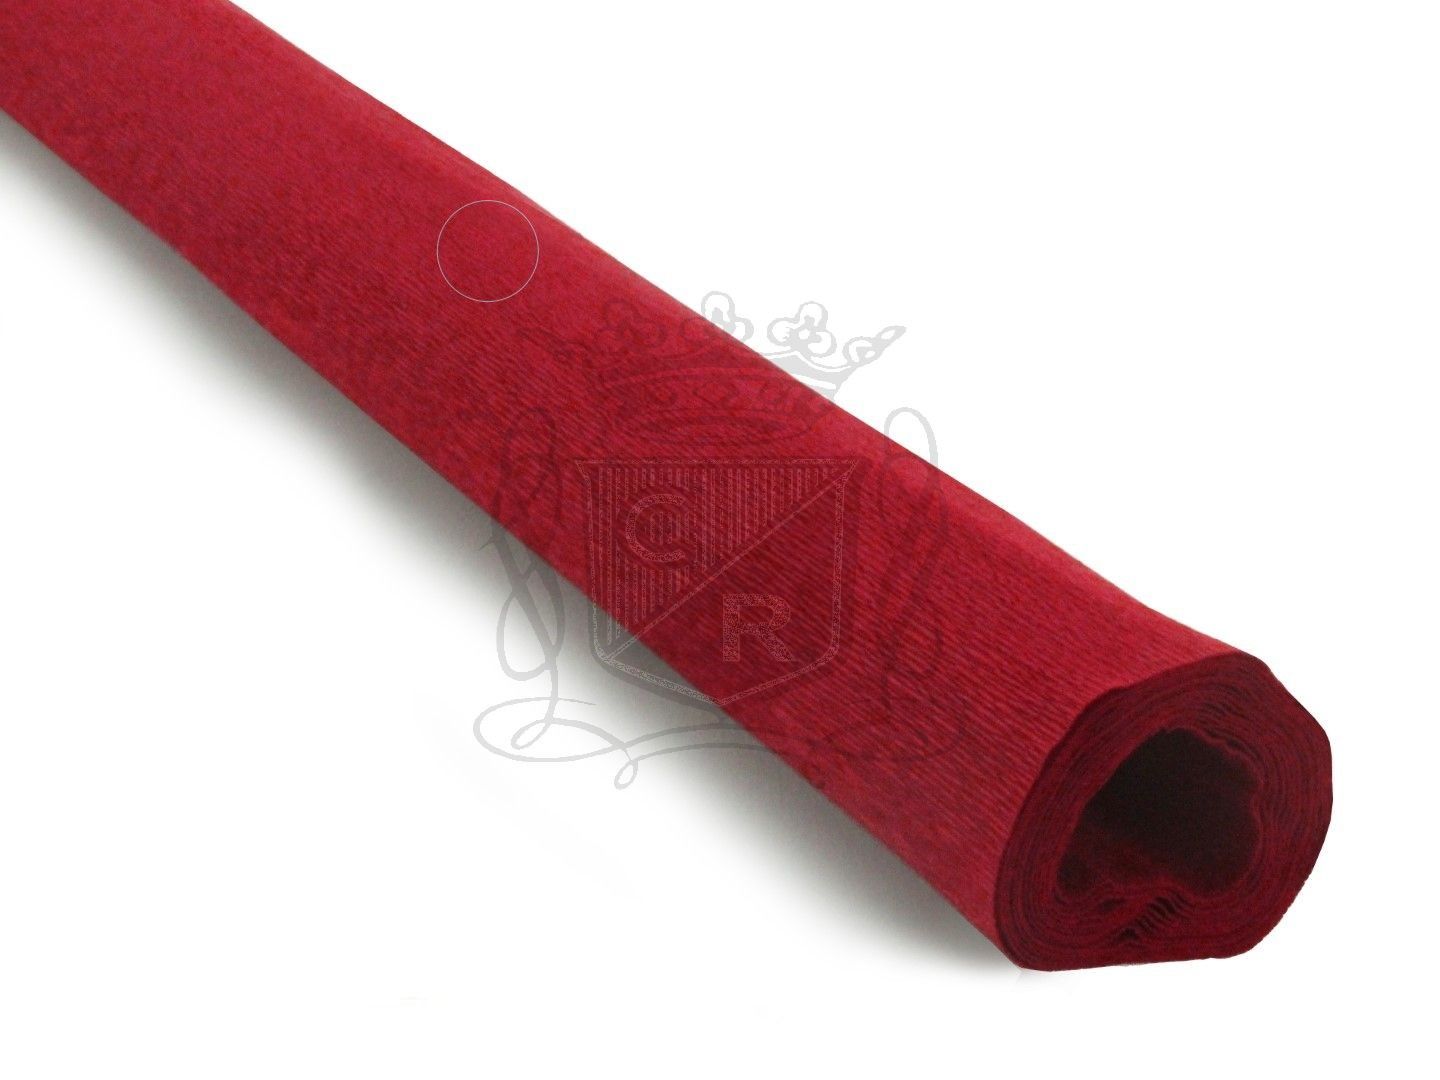 İtalyan Krapon Kağıdı No:392 Red 90 gr. 50*150 cm